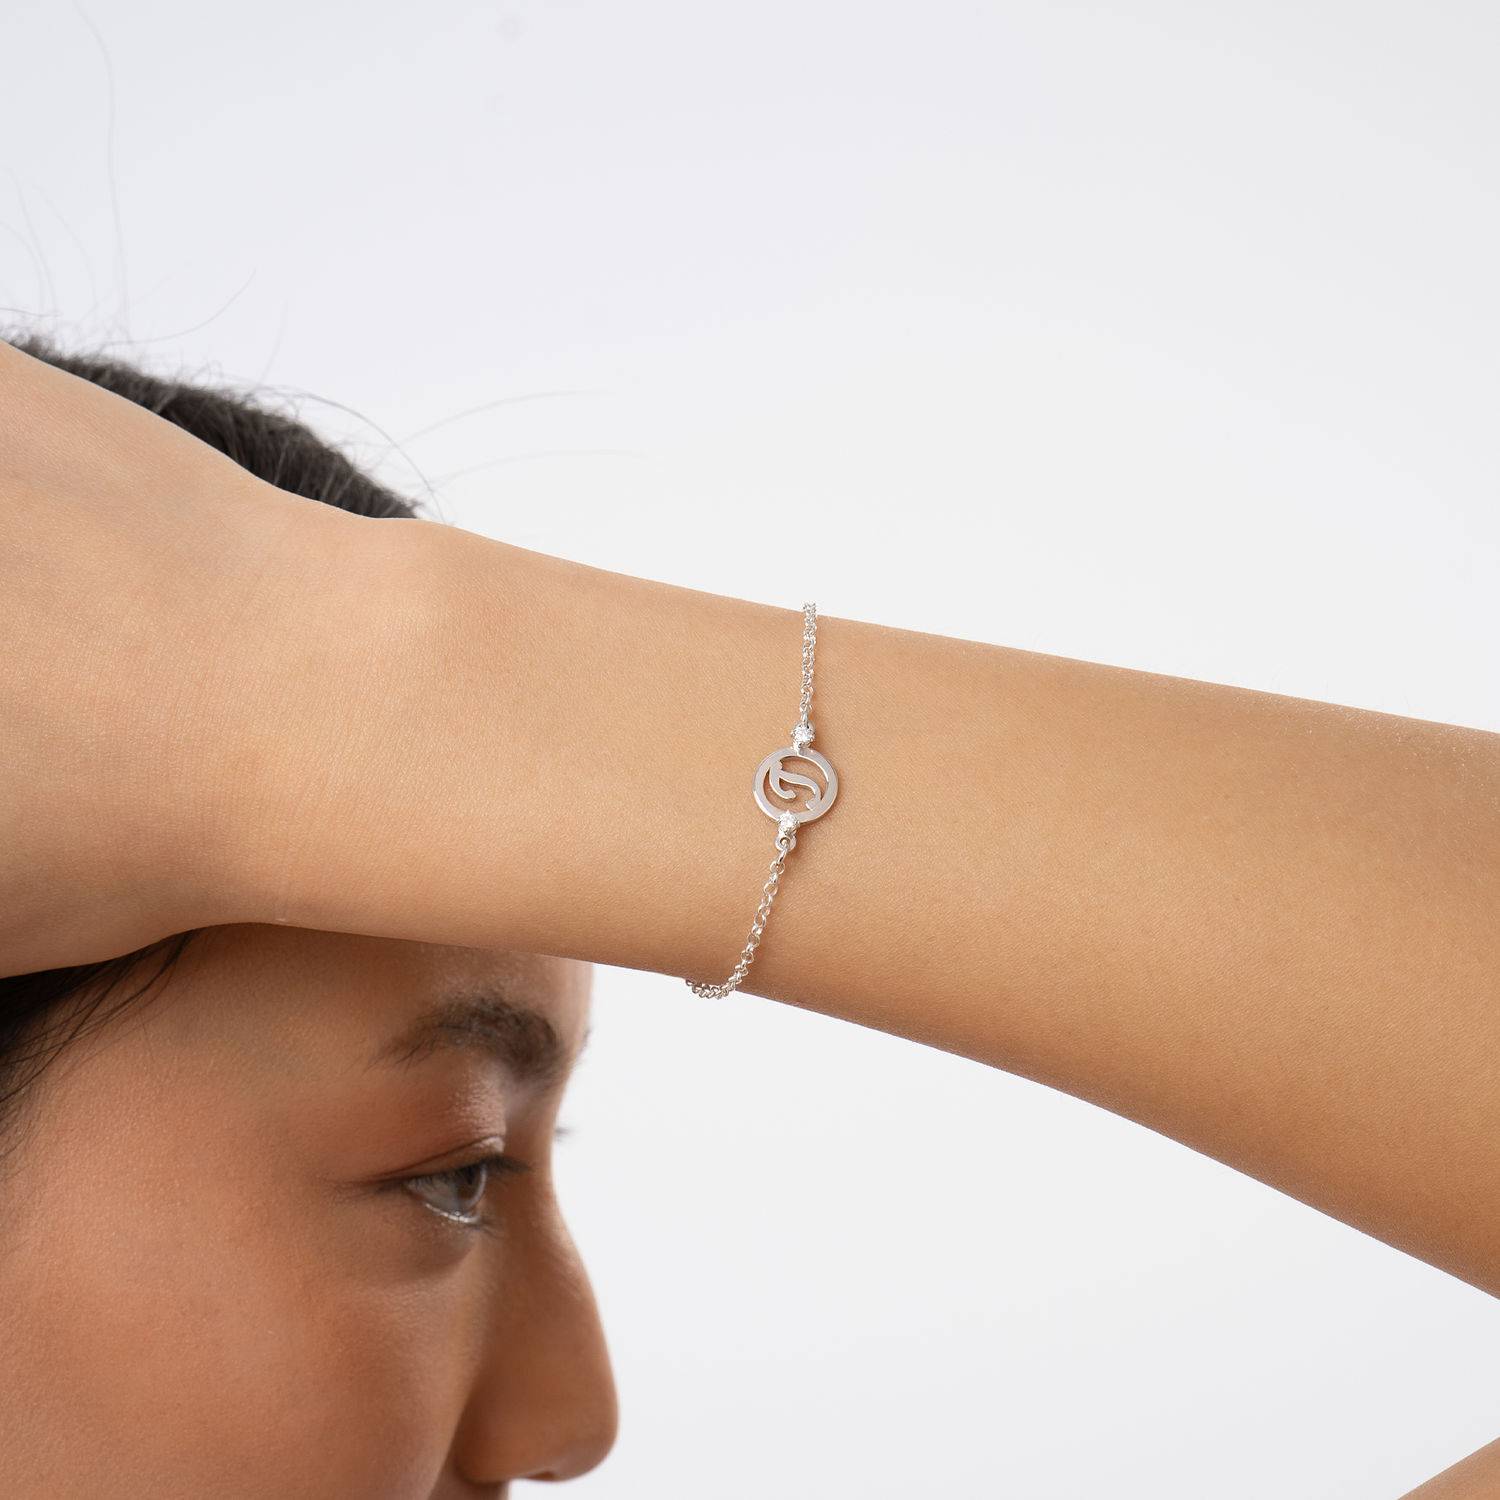 Halo armband met initialen en diamanten in sterling zilver-5 Productfoto